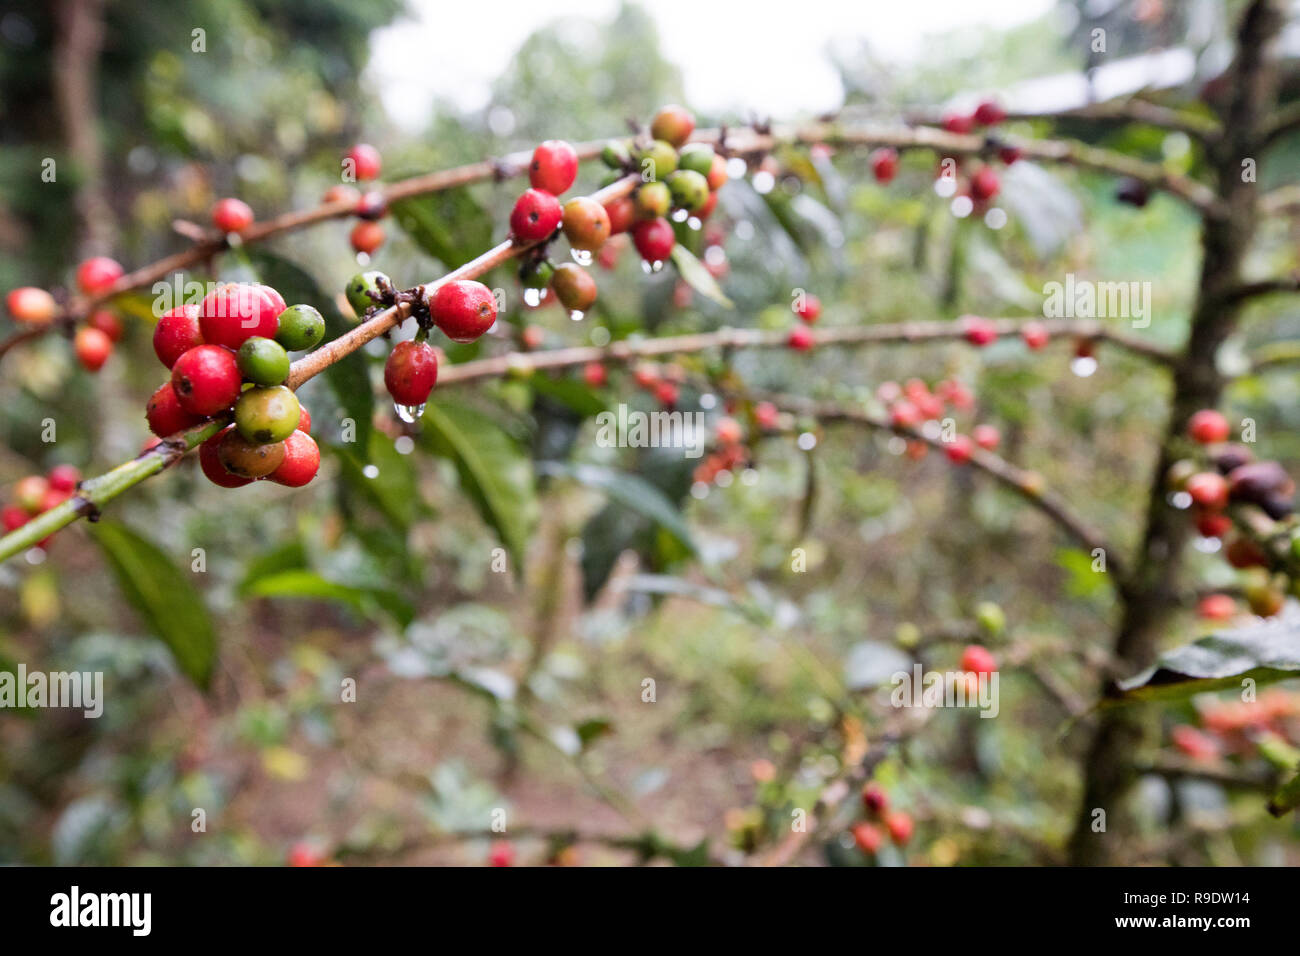 (181223) - Peking, 23 Dezember, 2018 (Xinhua) - Kaffee Bäume sind bei einem Kaffee Farm in der Nähe von Kaffa, Äthiopien, Dez. 8, 2018 gesehen. Die lokale/Betriebe Hauptsaison im Dezember jeden Jahres. Kaffee in Äthiopien verwurzelt ist der Rohstoff für verschiedene Kaffeegetränke, die von Menschen auf der ganzen Welt bevorzugt. Es wird gesagt, dass Kaffee entdeckt wurde von schafhirte in Kaffa, südwestliche in Äthiopien, von denen der Name von Kaffee entwickelt. Kaffeebohnen aus Äthiopien sind in China vor allem auf dem Seeweg exportiert. Geschält grüne Kaffeebohnen durch Straße und Bahn und dann zum Hafen von Dschibuti transportiert nach ca. 21 d Stockfoto